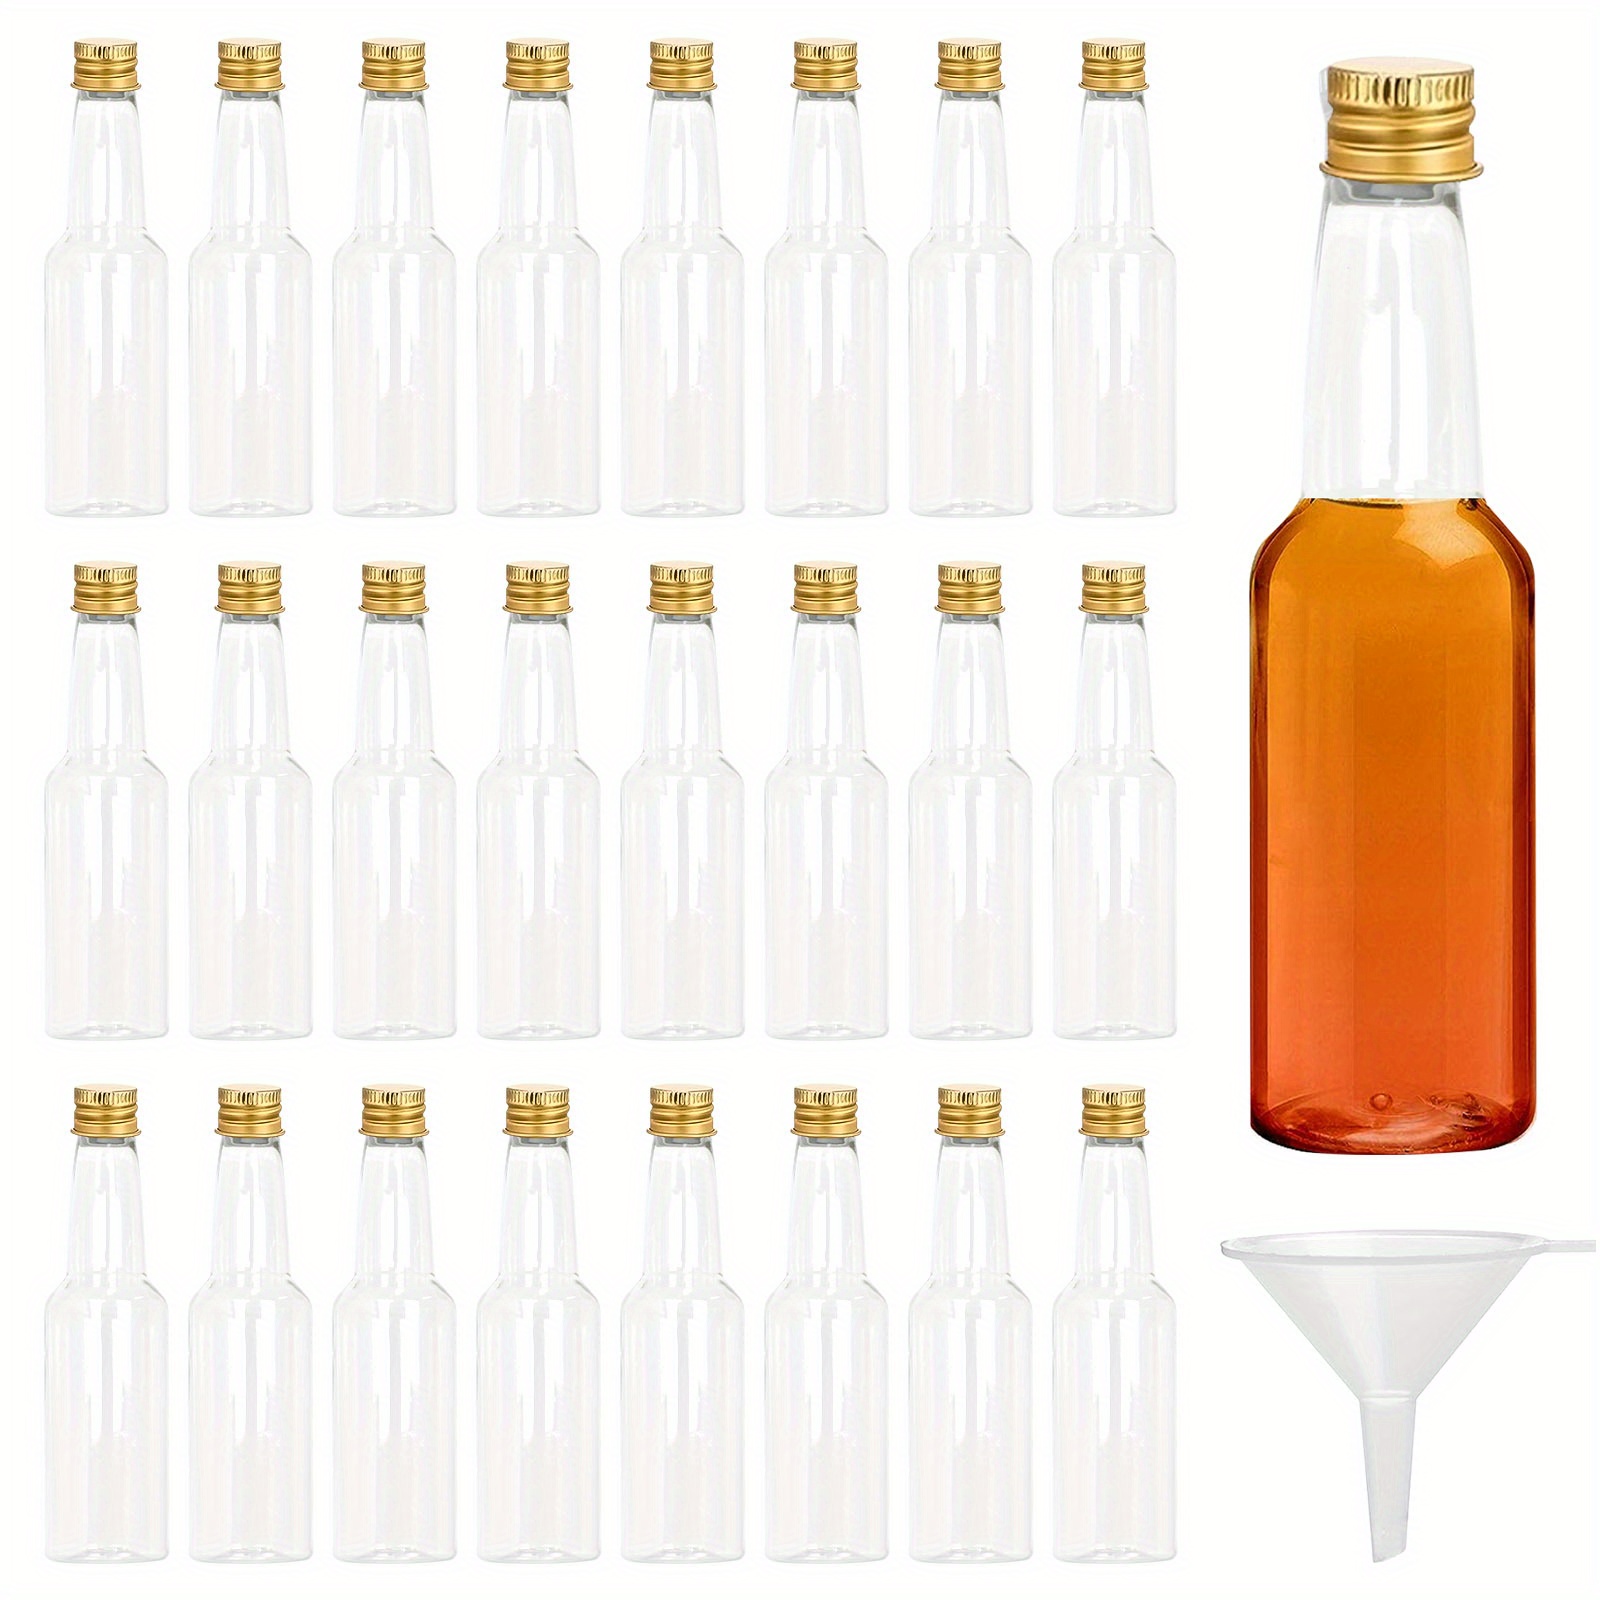 24 piezas de botellas de licor miniatura de plástico reutilizables de 50 ml  / 1.7 oz con tapas de rosca negras y embudo líquido para verter fácilmente